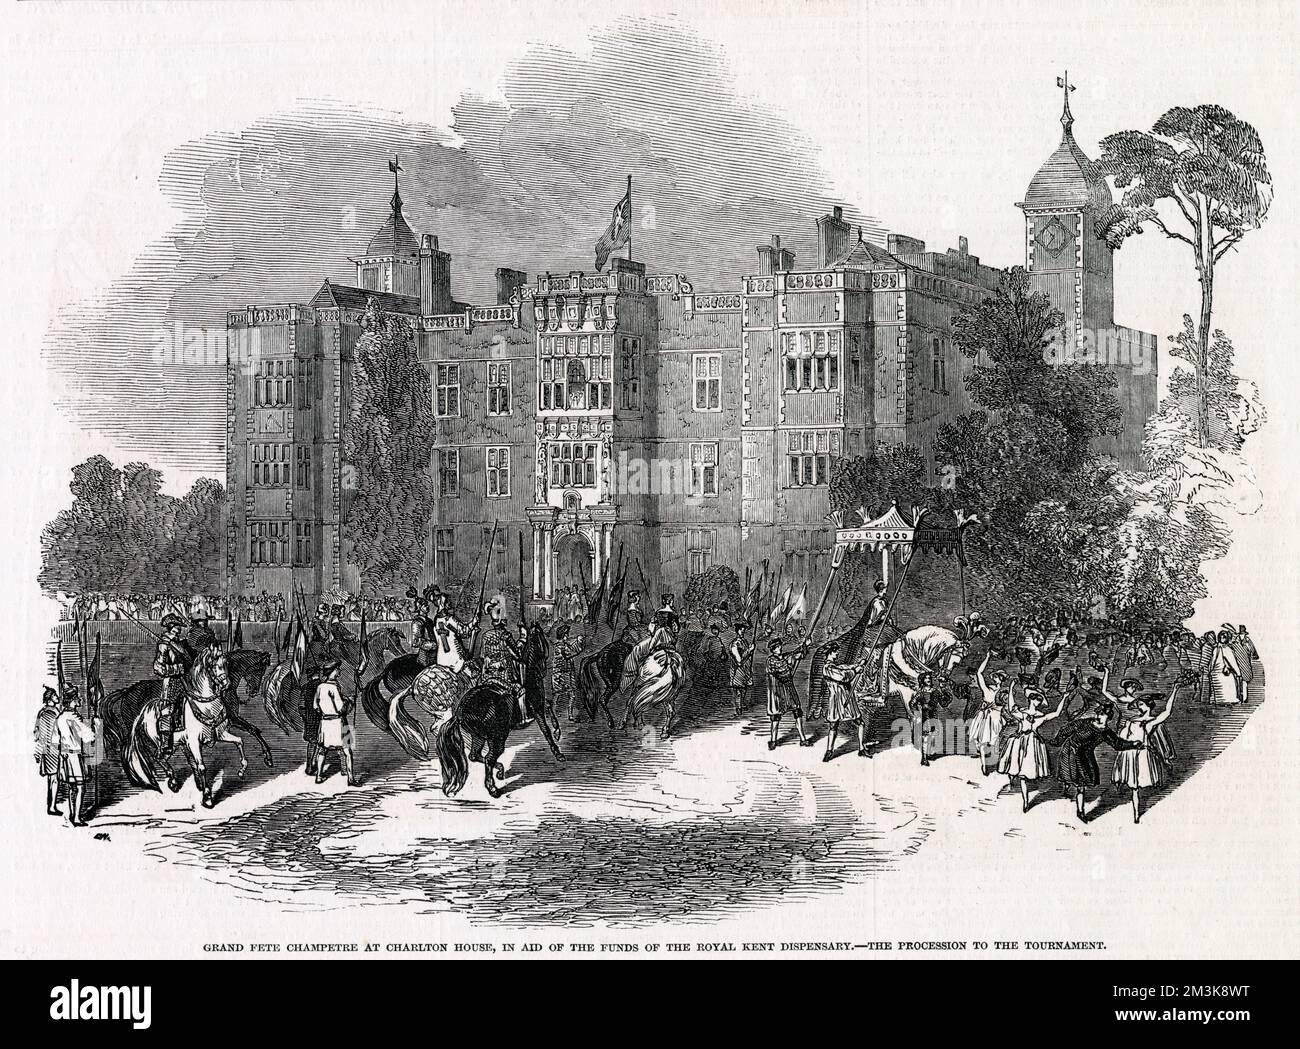 En face de la Heath de notre bibliothèque, Charlton House est souvent le théâtre d'événements tels que ce fète en aide au Royal Kent Dispensary, avec un tournoi. Date: 1848 Banque D'Images